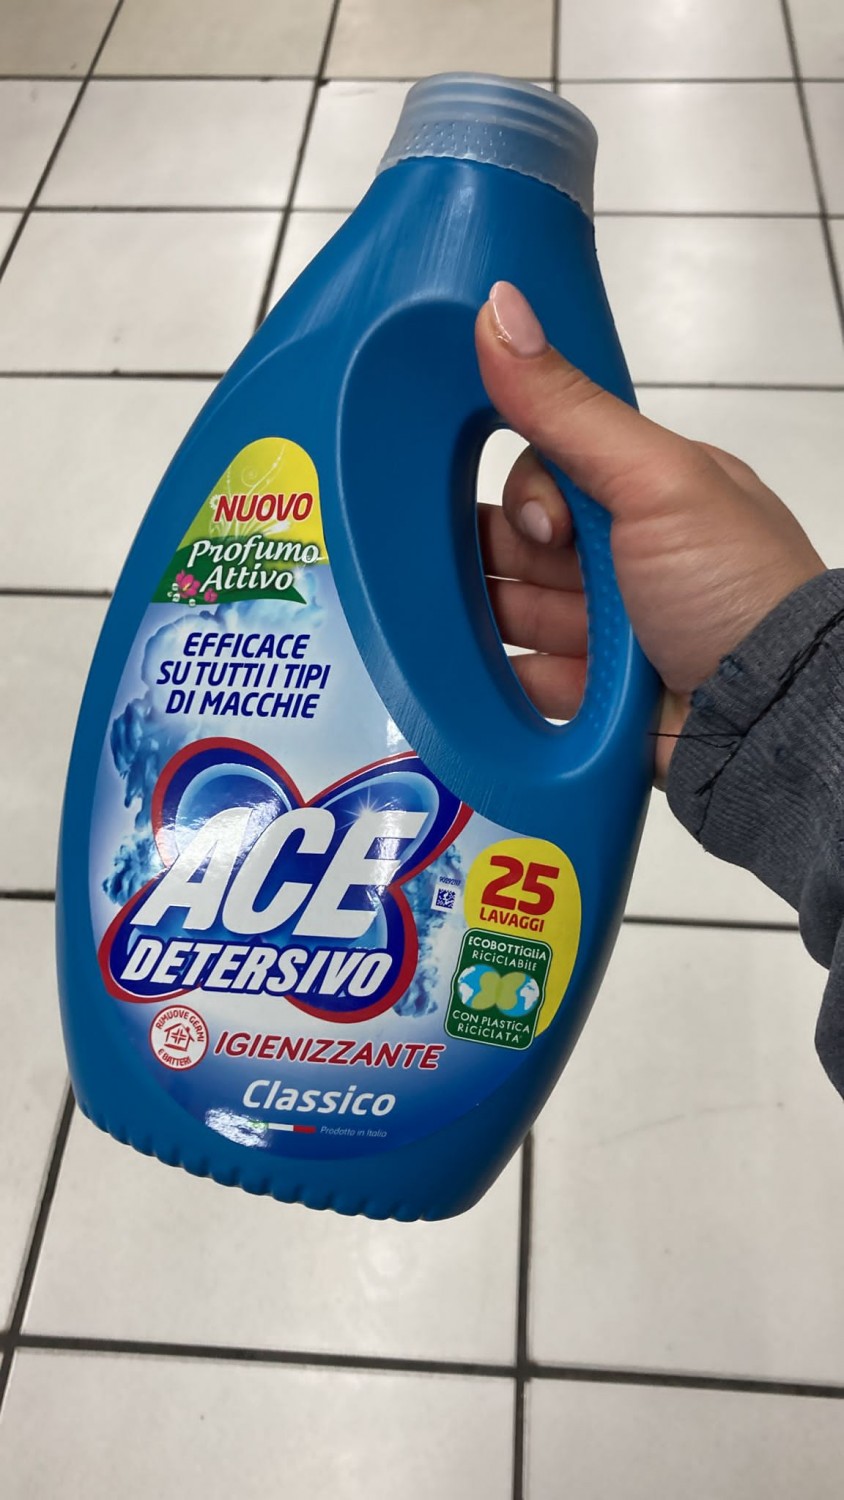 ACE Detersivo Igienizzante Classico - MammacheTest